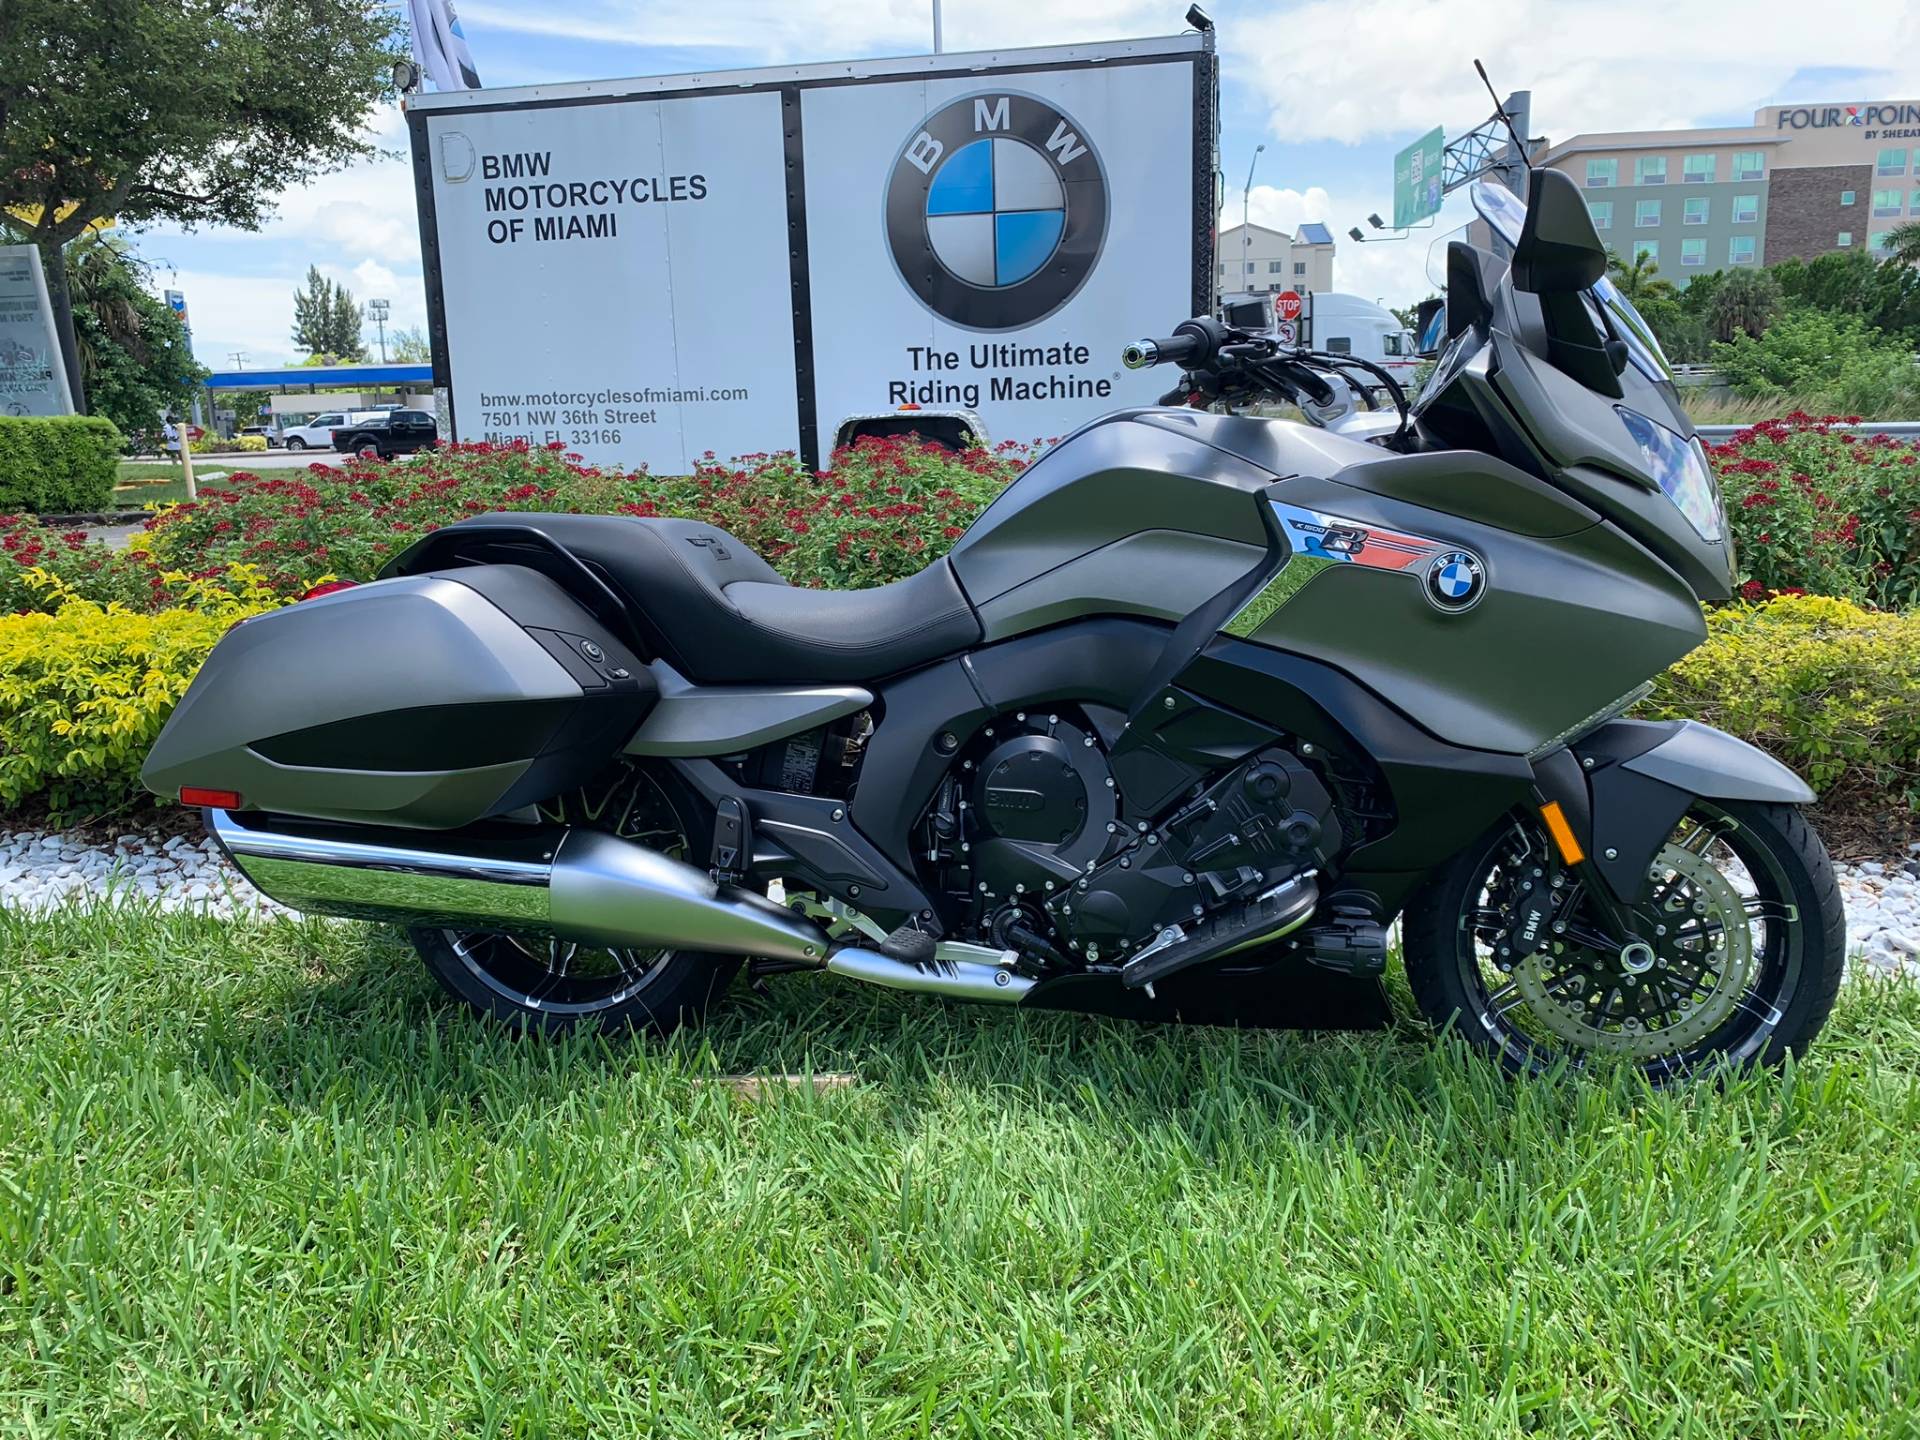 New 2019 BMW K 1600 B Motorcycles in Miami, FL